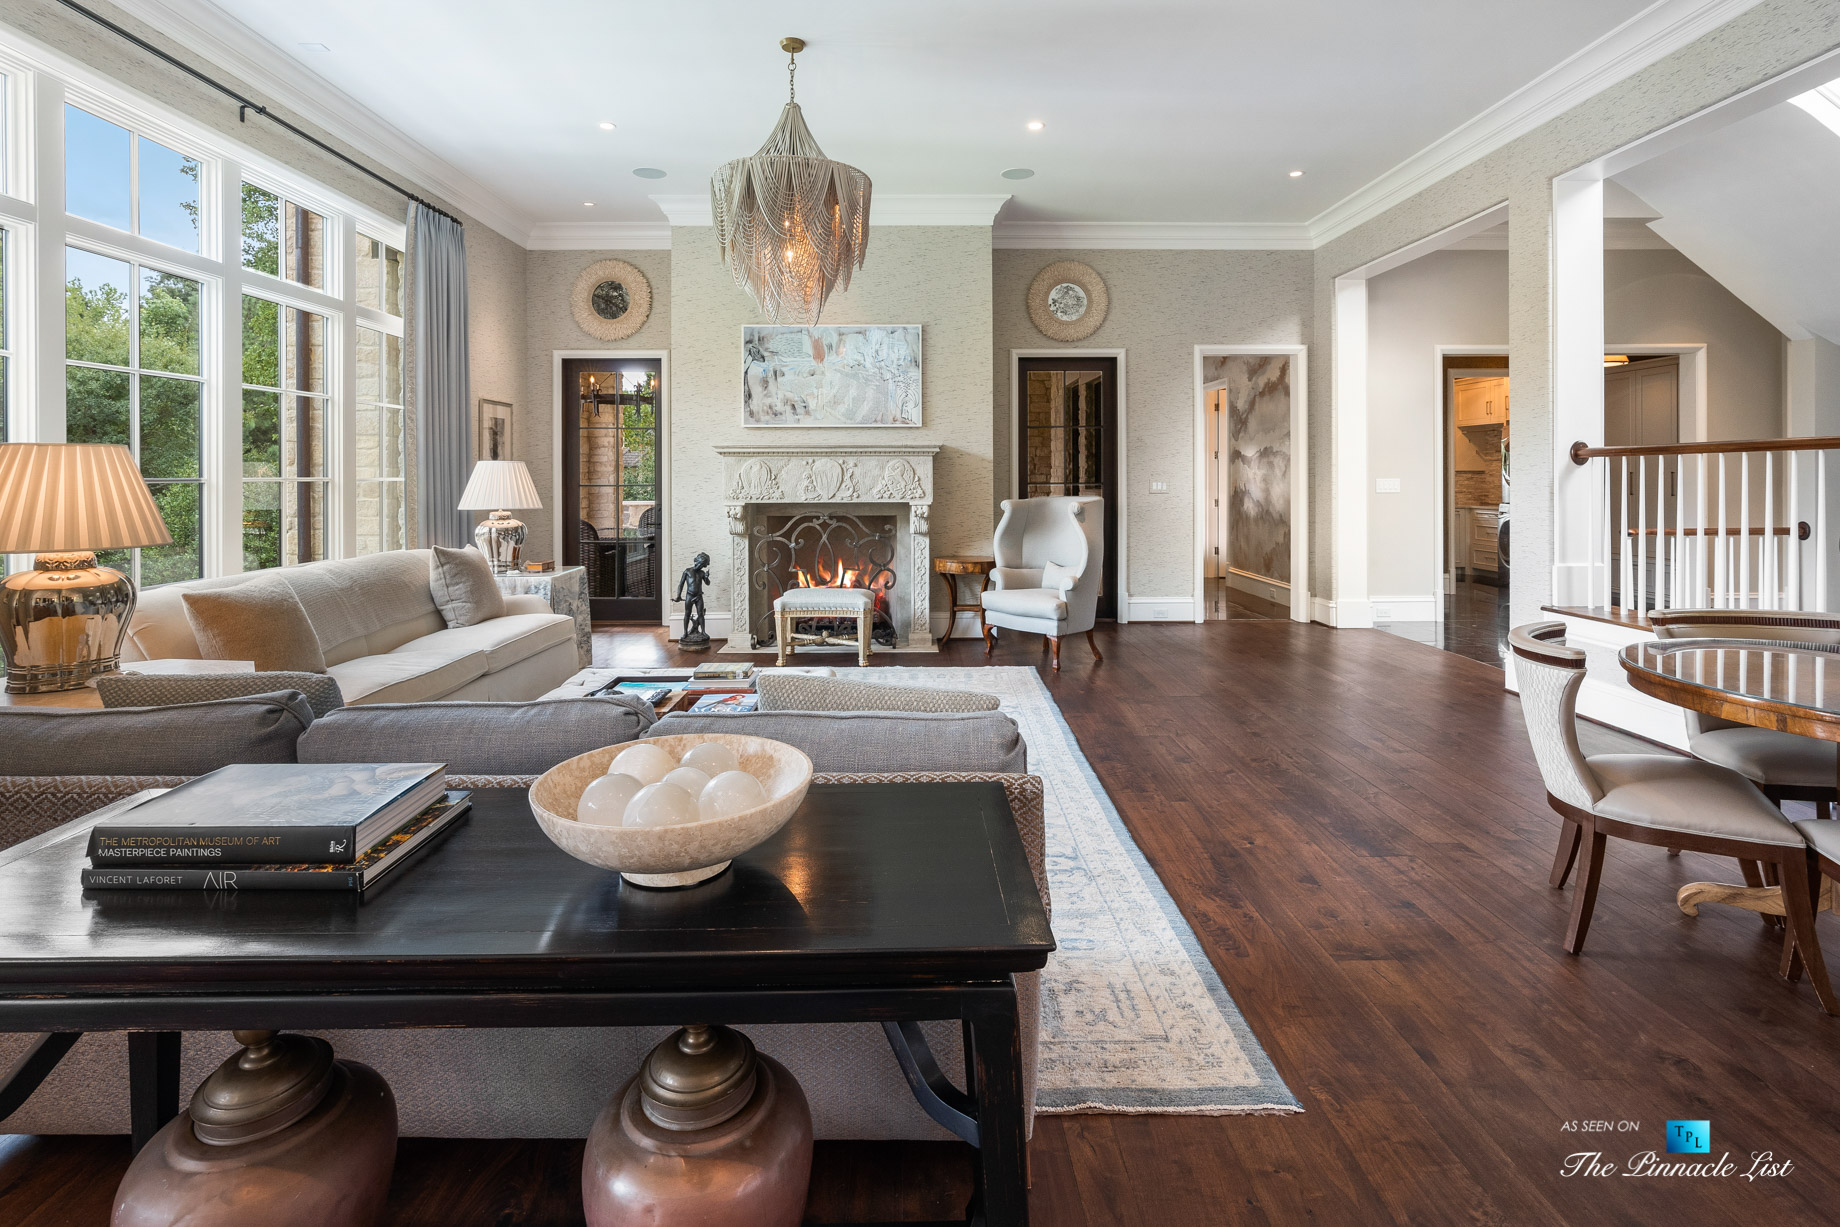 1150 W Garmon Rd, Atlanta, GA, USA - Luxurious Family Room with Fireplace - Luxury Real Estate - Buckhead Estate Home